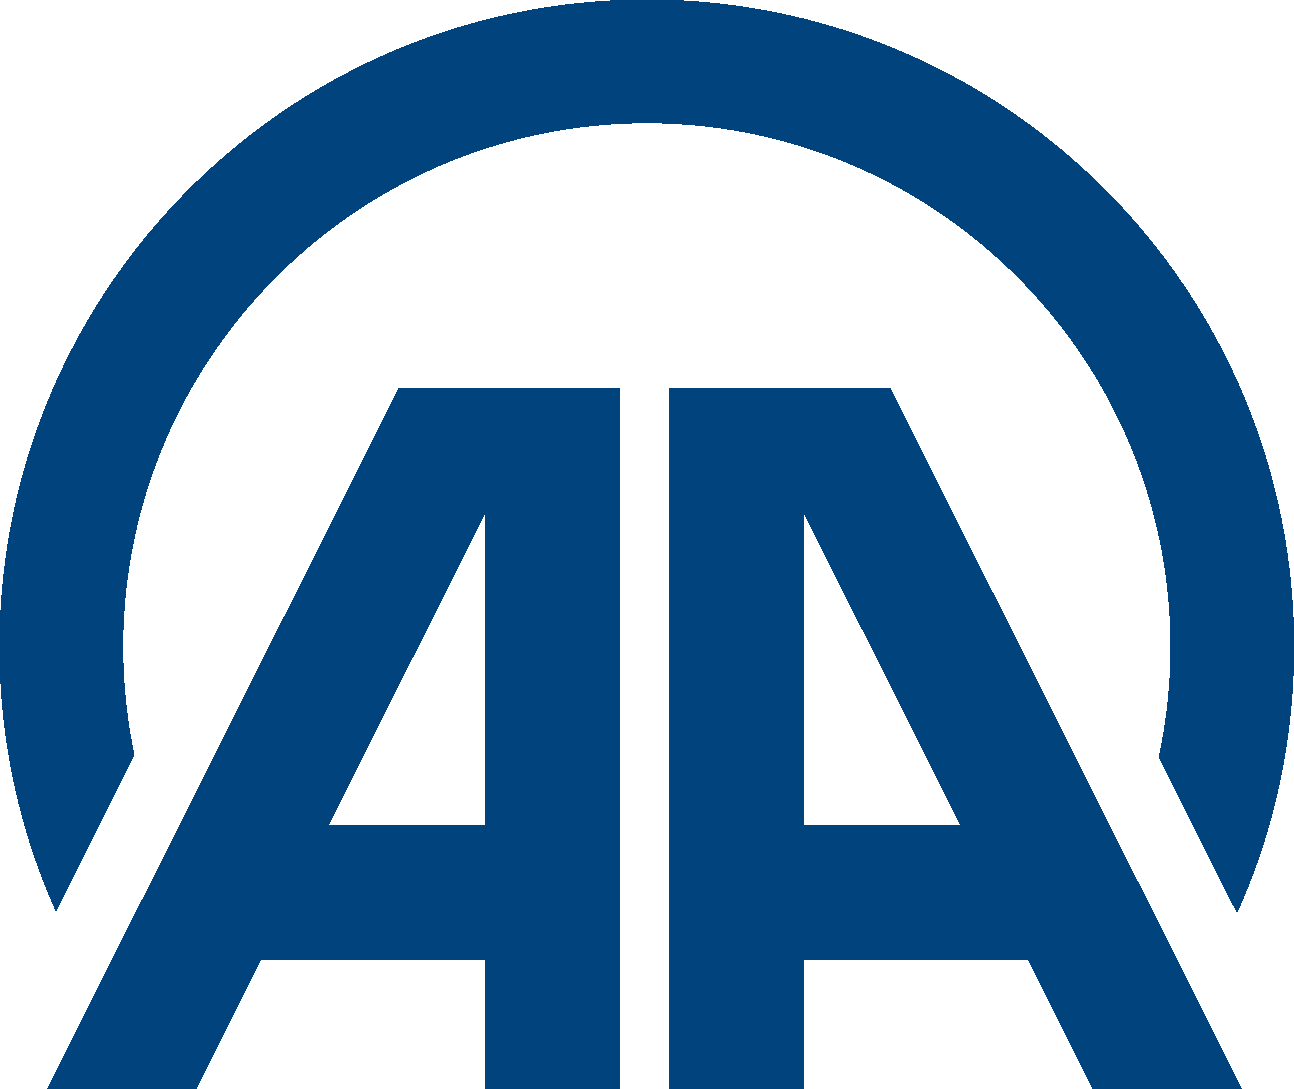 Anadolu Ajansı Logo (Anadolu Agency   aa.com.tr) png